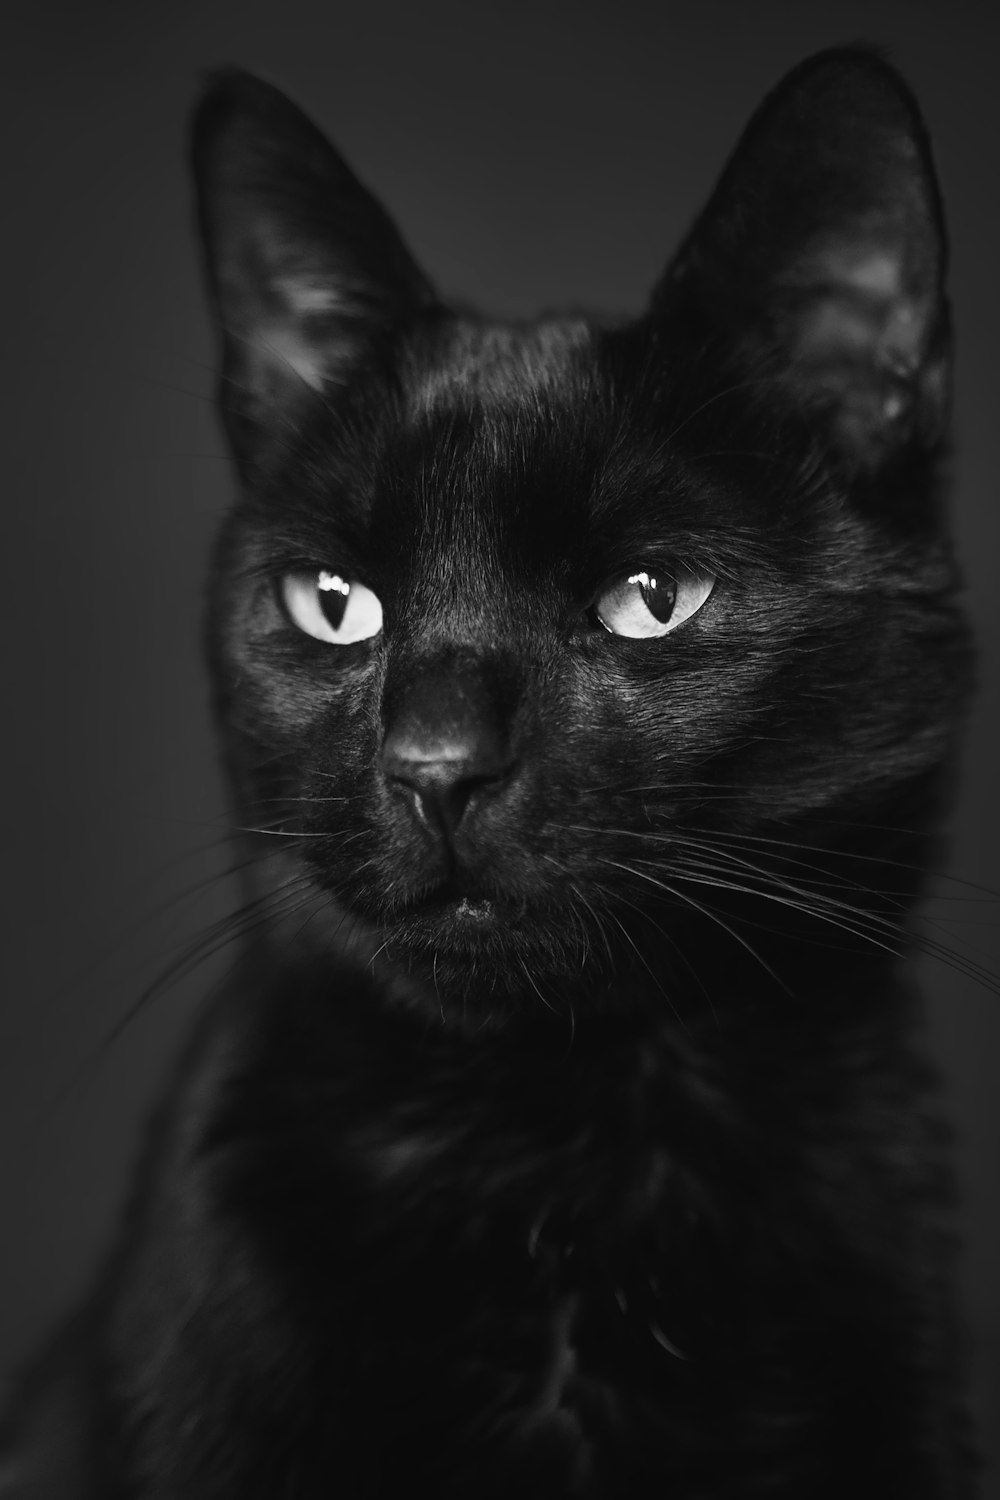 gatto nero in scala di grigi